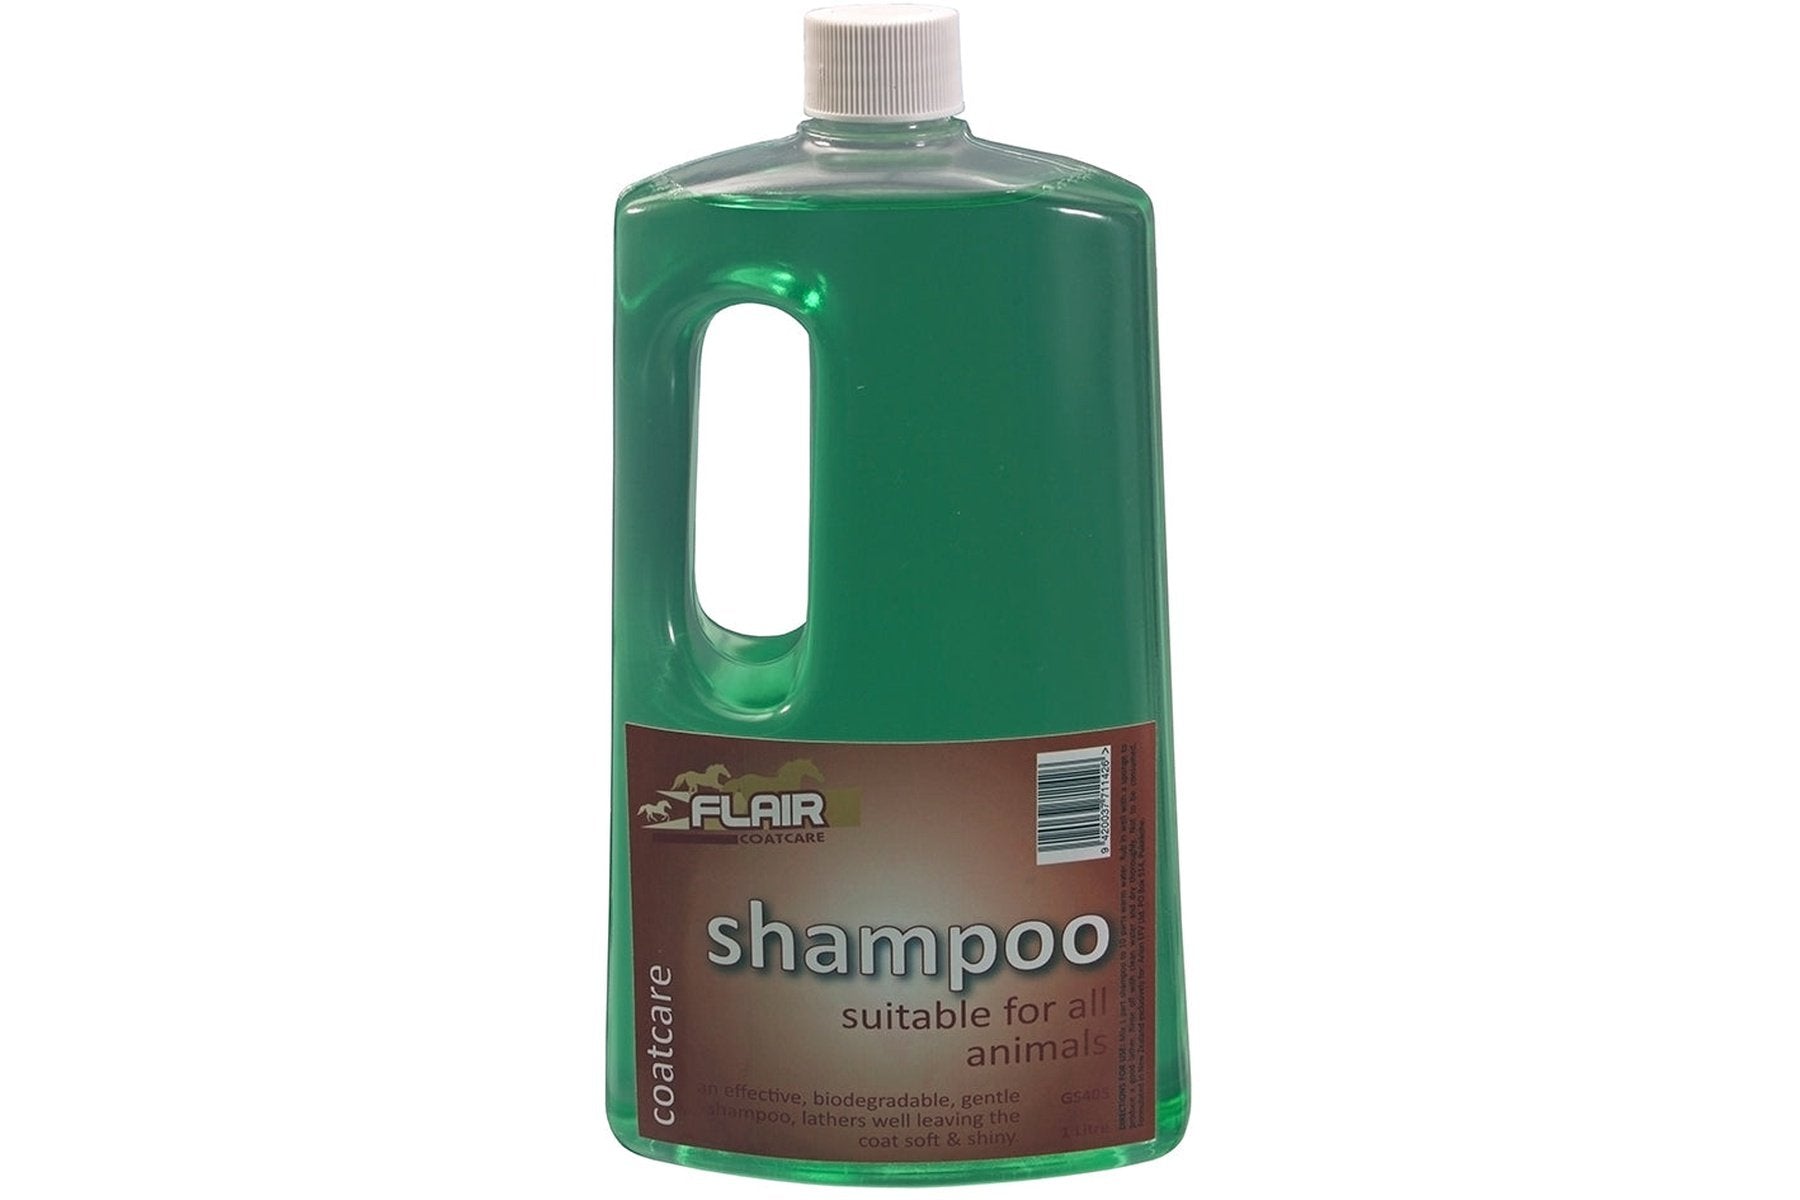 Flair Shampoo